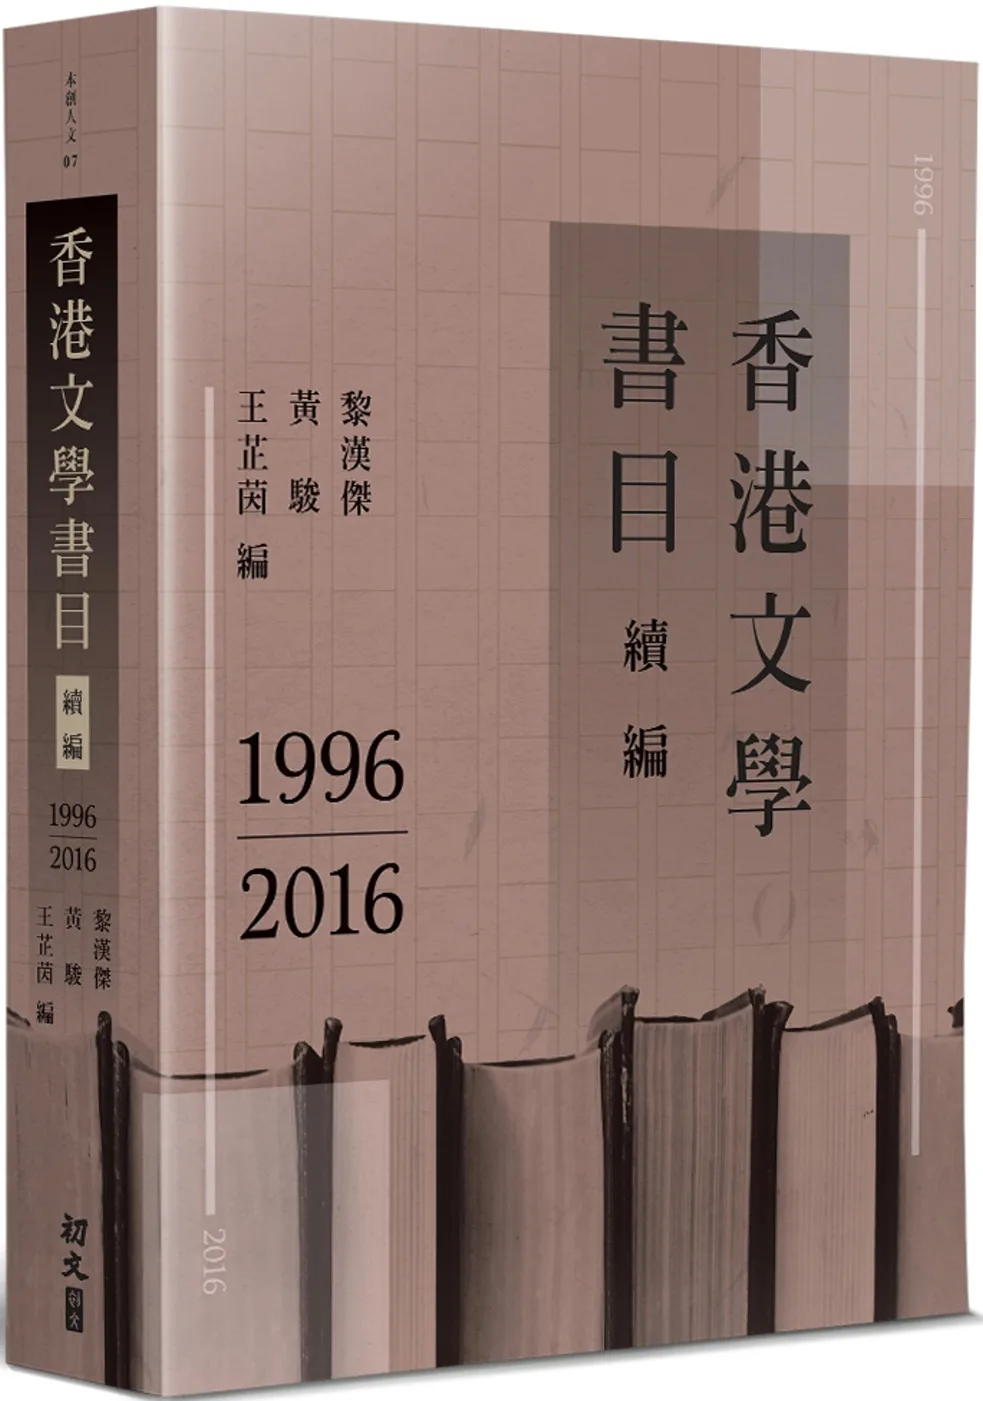 香港文學書目續編(1996-2016)